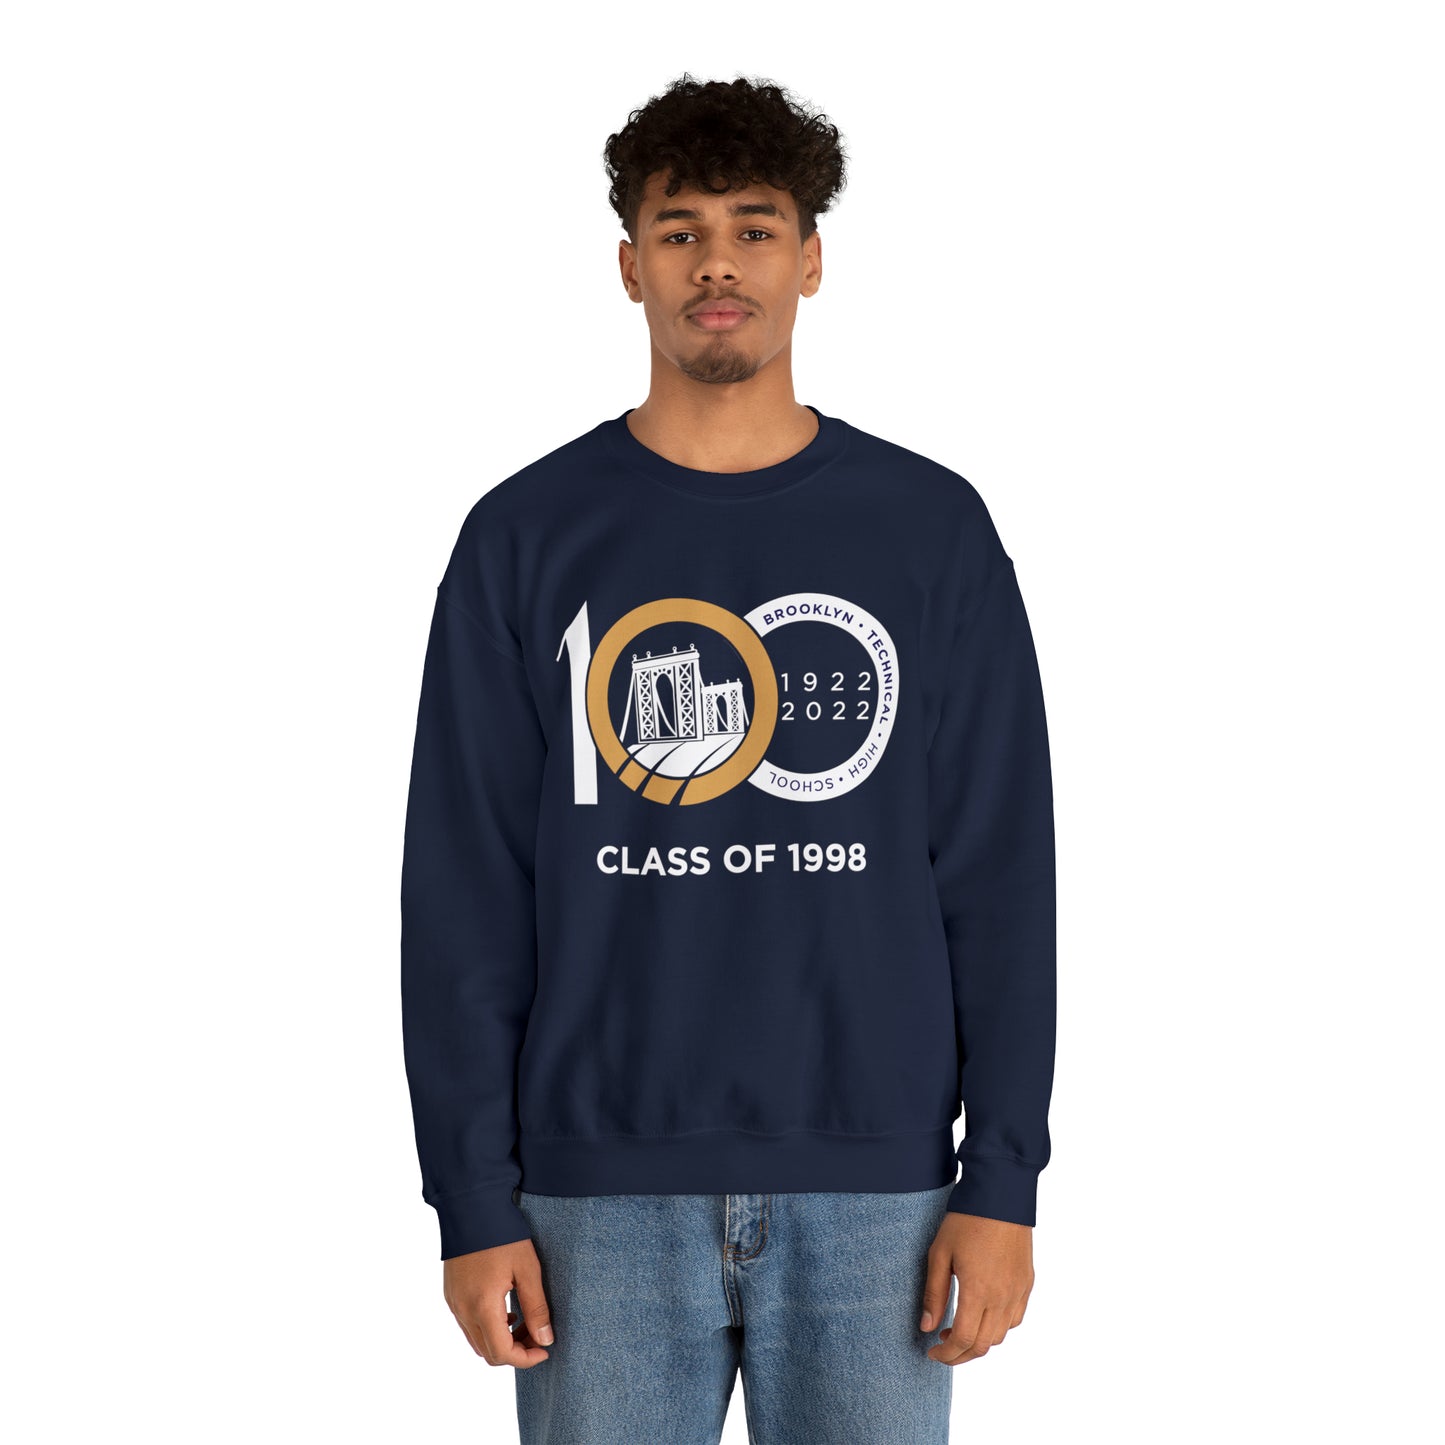 Centennial - Men's Heavy Blend Crewneck Sweatshirt - Class Of 1998